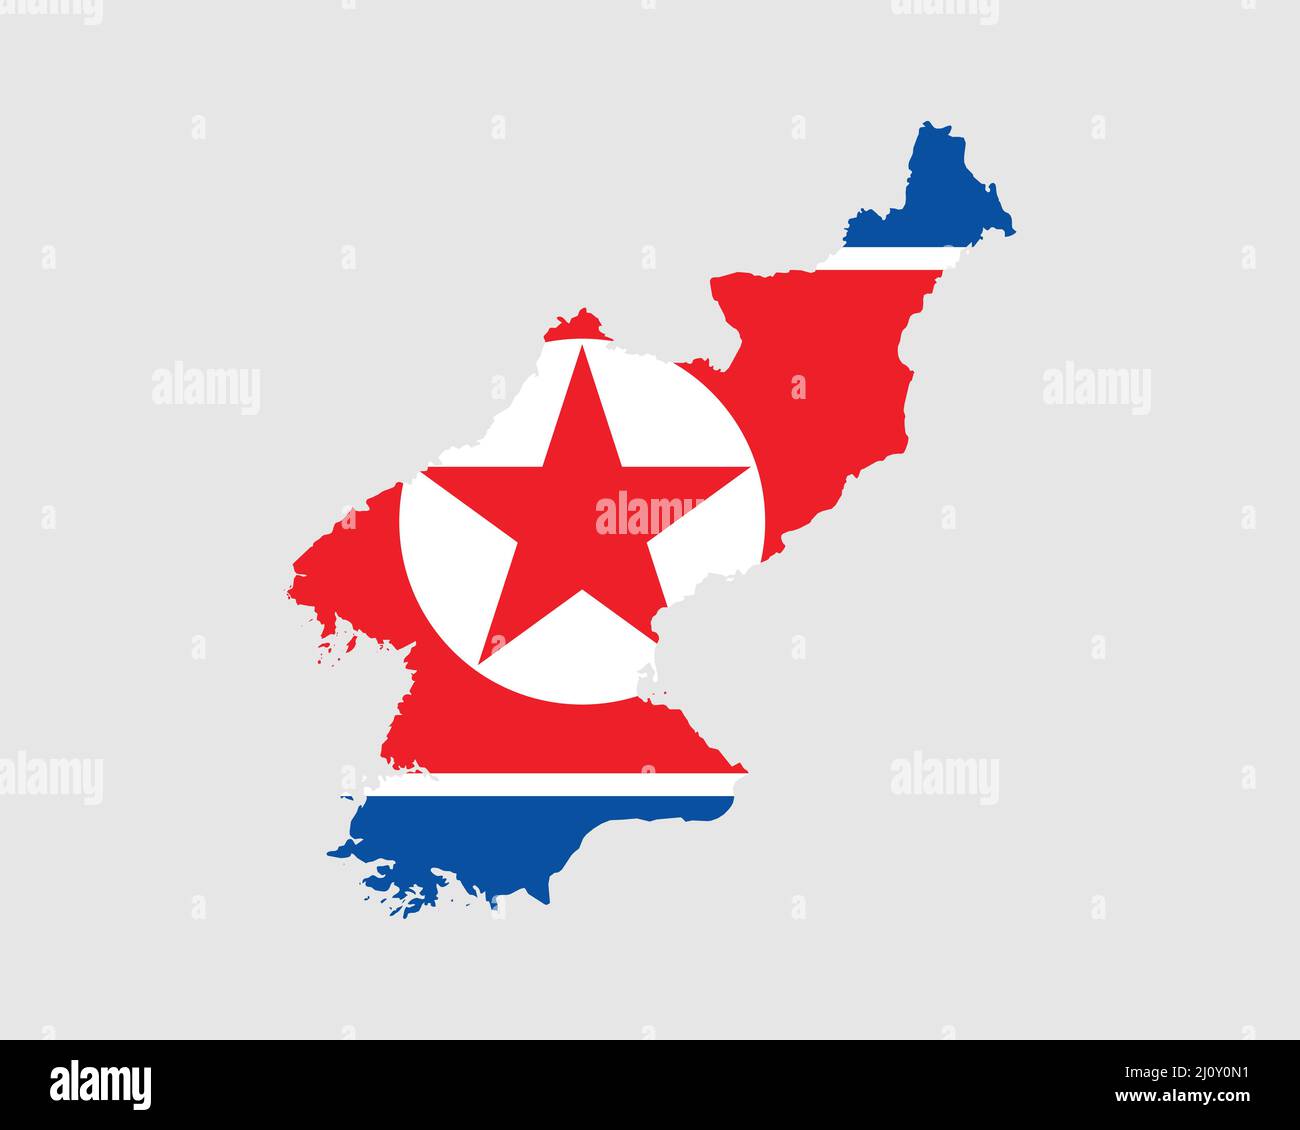 Mappa della bandiera della Corea del Nord. Mappa della Repubblica popolare Democratica di Corea con la bandiera della Corea del Nord. Illustrazione vettoriale. Illustrazione Vettoriale